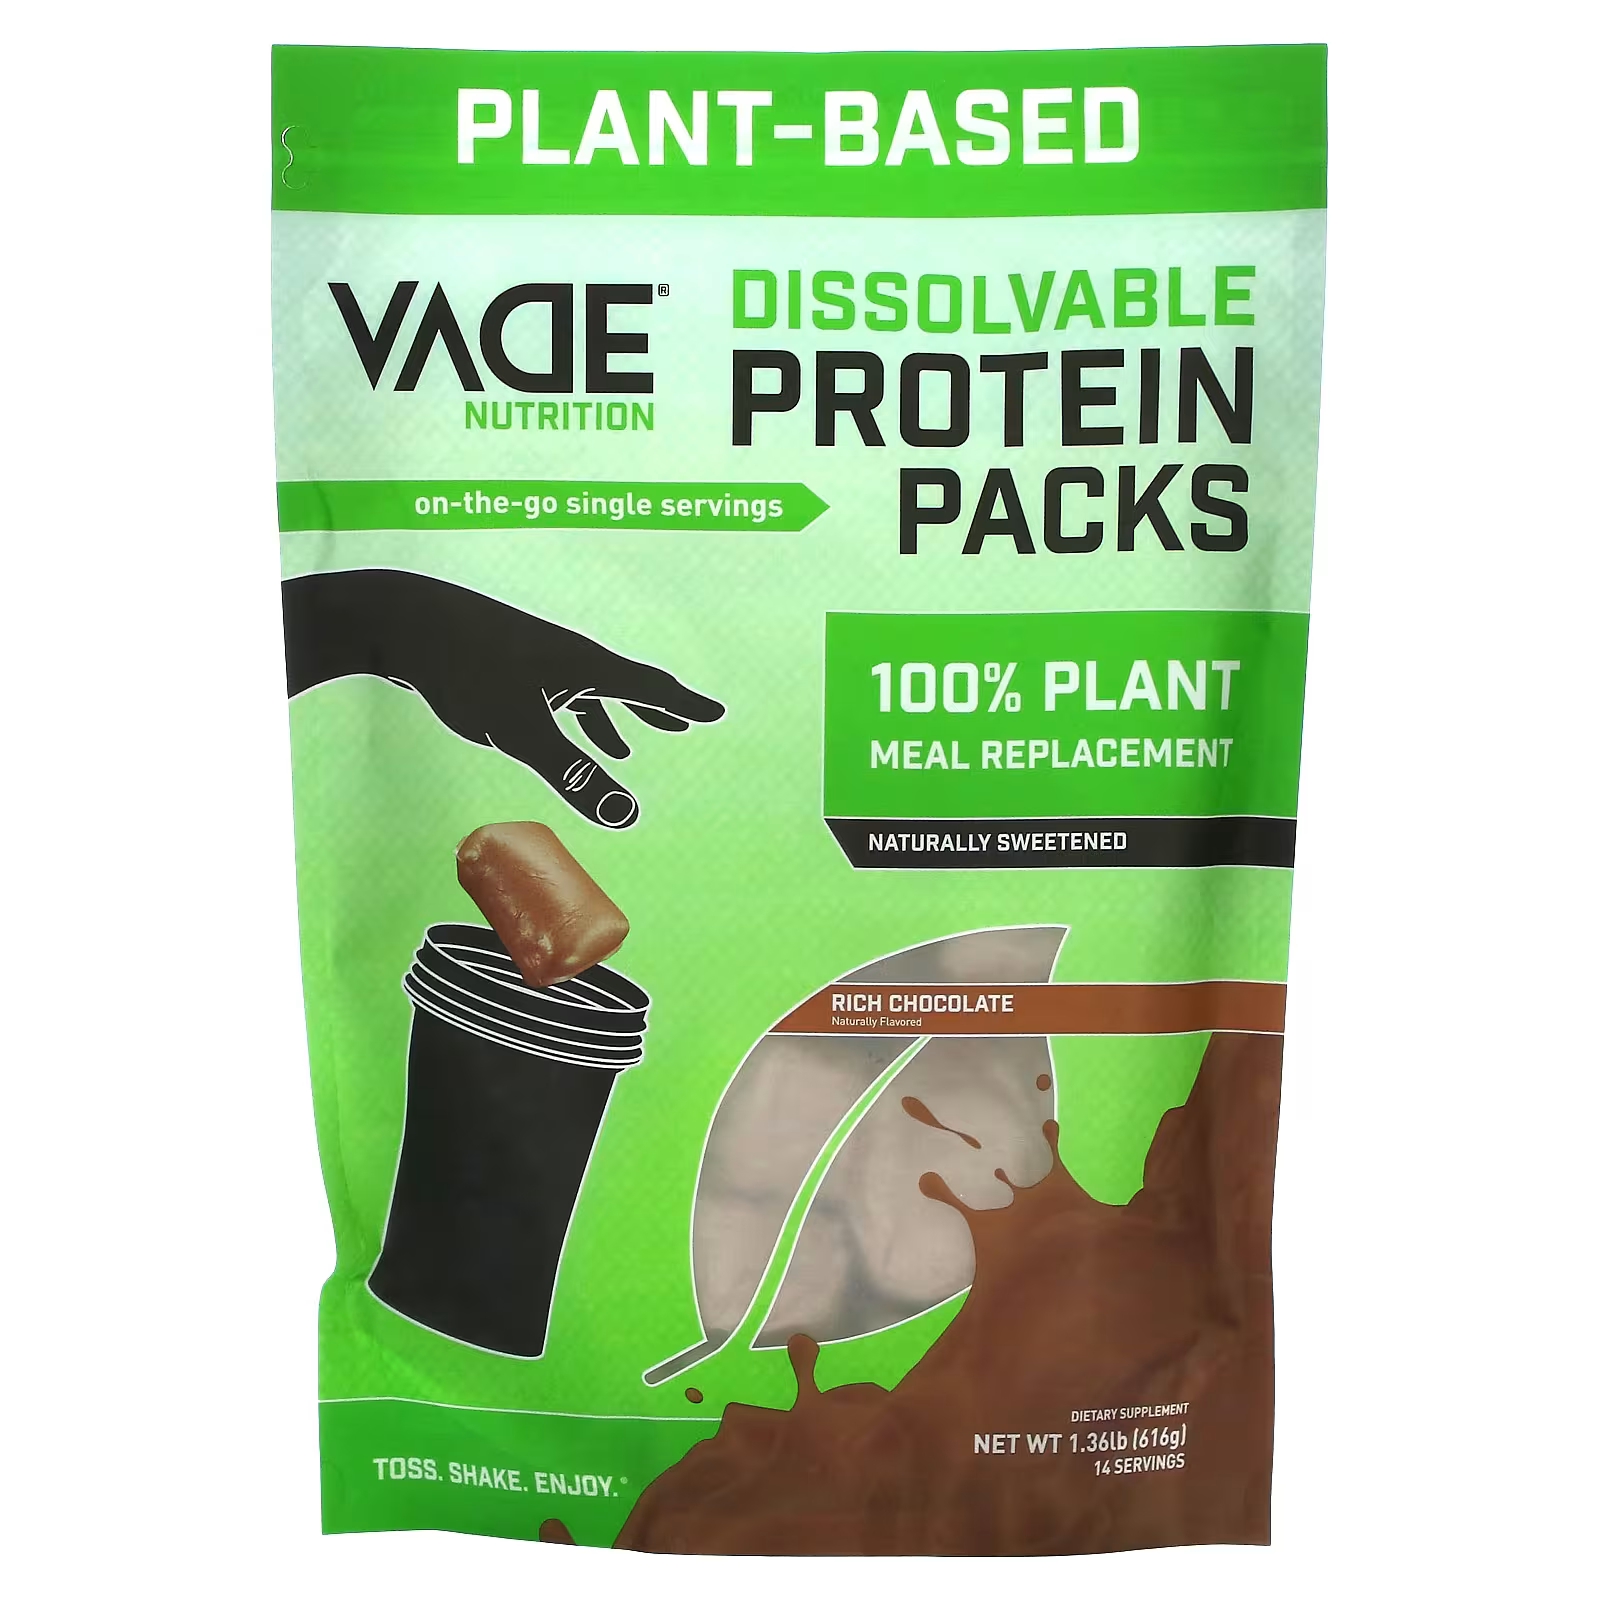 Растительный протеин Vade Nutrition Dissolvable Protein Packs со вкусом шоколада, 616 г заменитель сахара huxol secret form 170 г